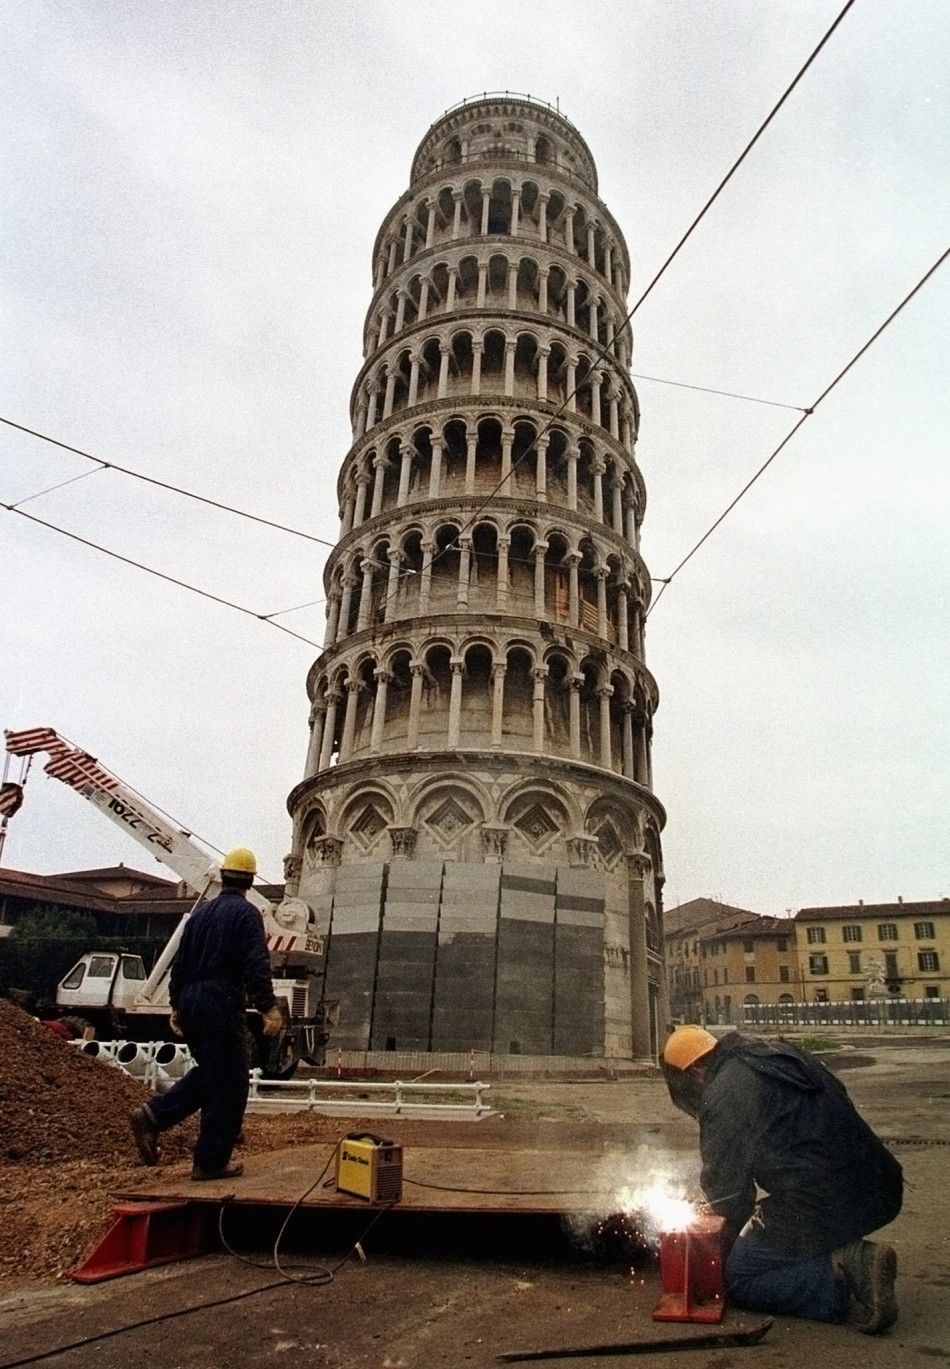 Tower of Pisa repair